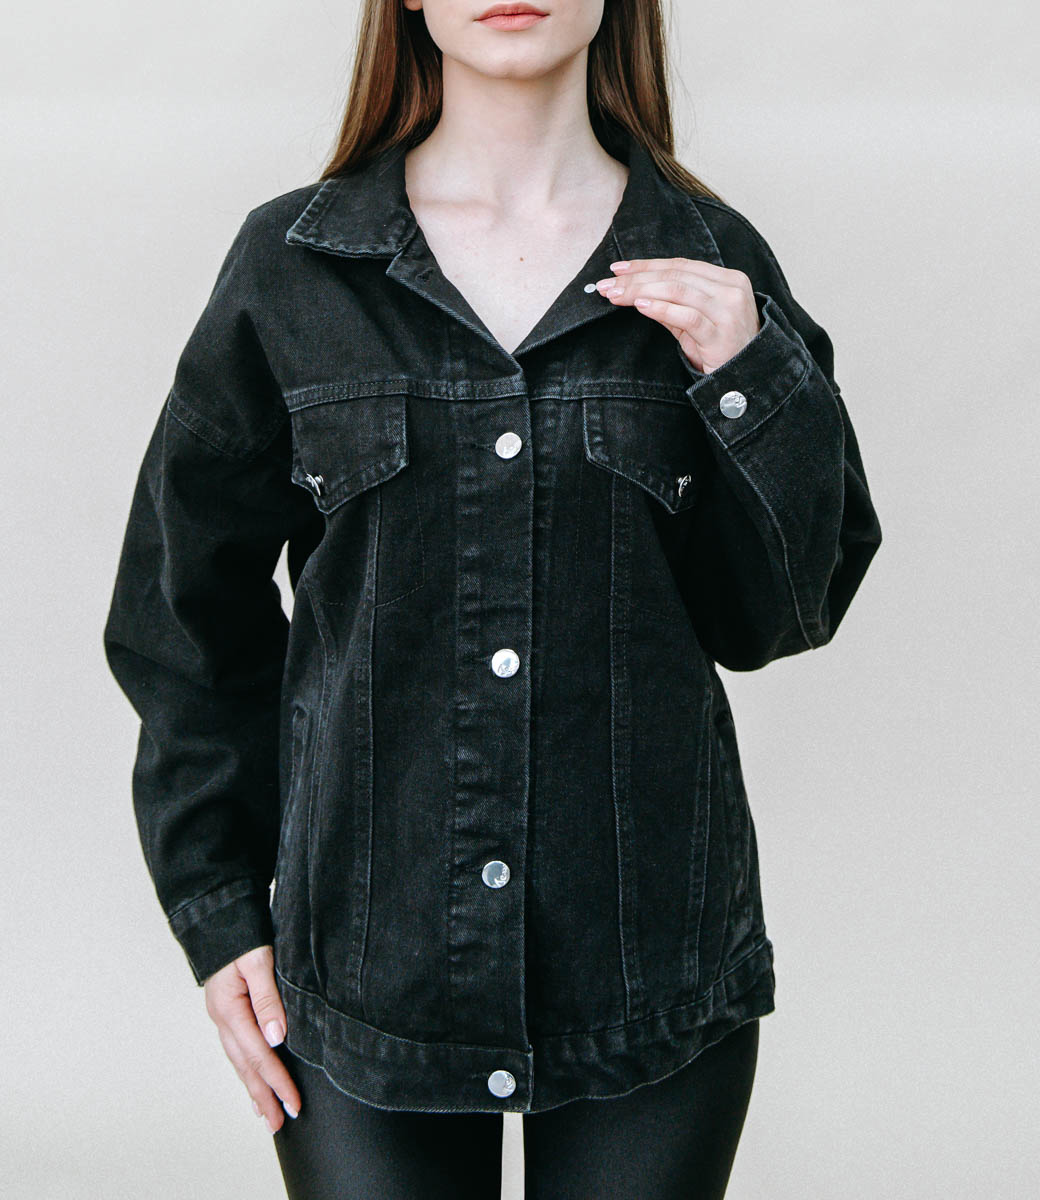 Джинсовая куртка #680, цвет чёрный - купить женские джинсовые куртки оптом